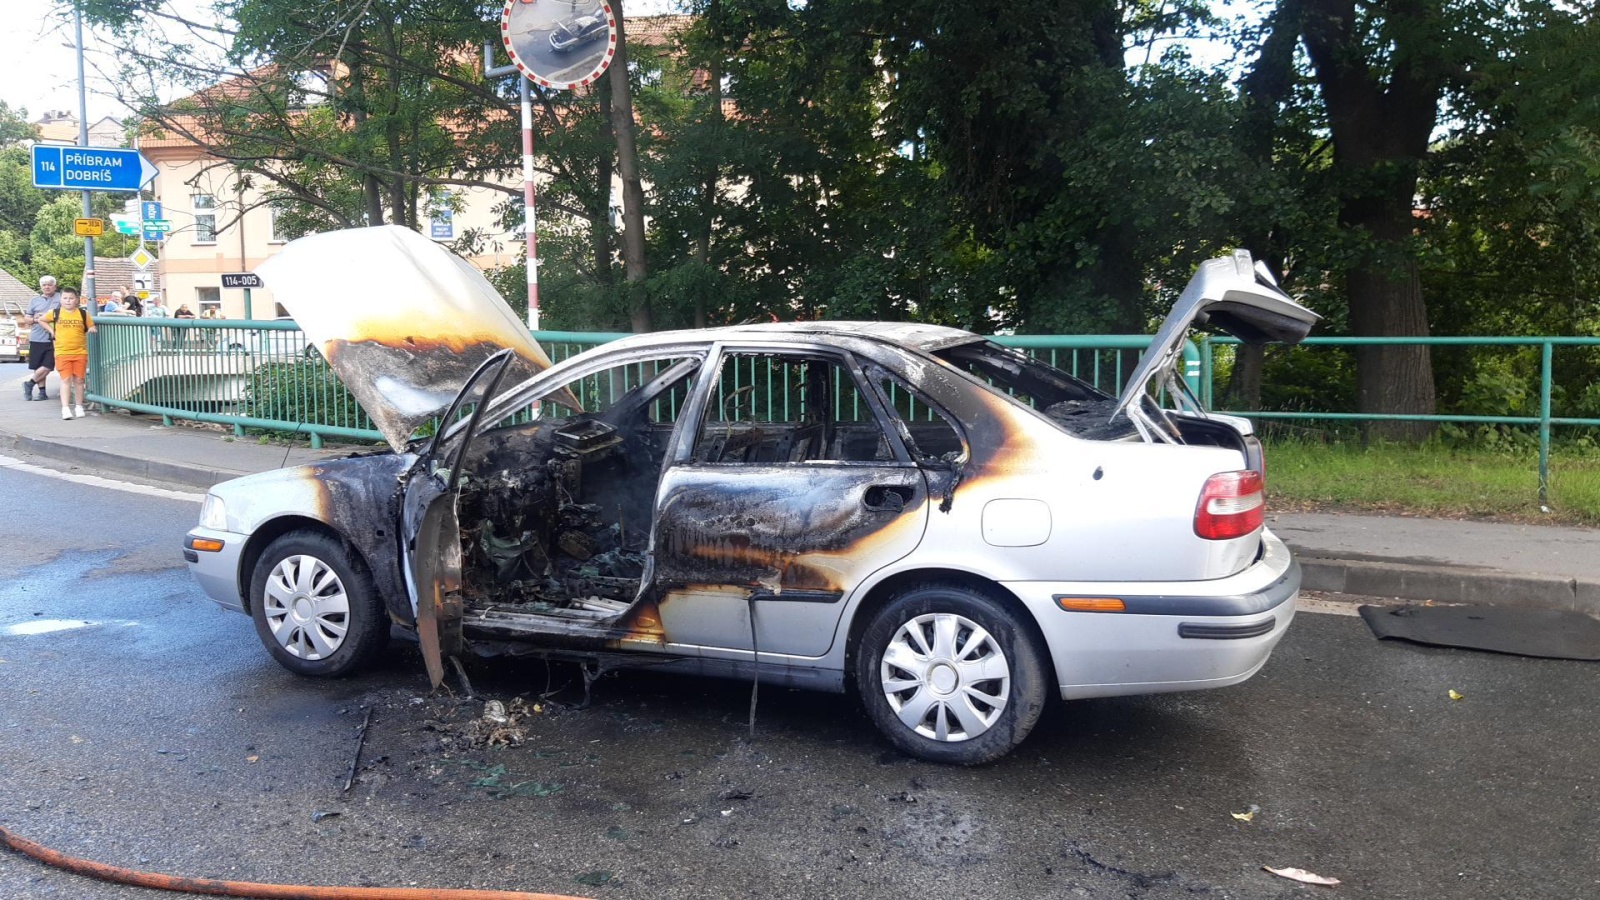 180624-Požár osobního automobilu s pohonmem na LPG v Masarykově ulici v Hořovicích na Berounsku.jpg